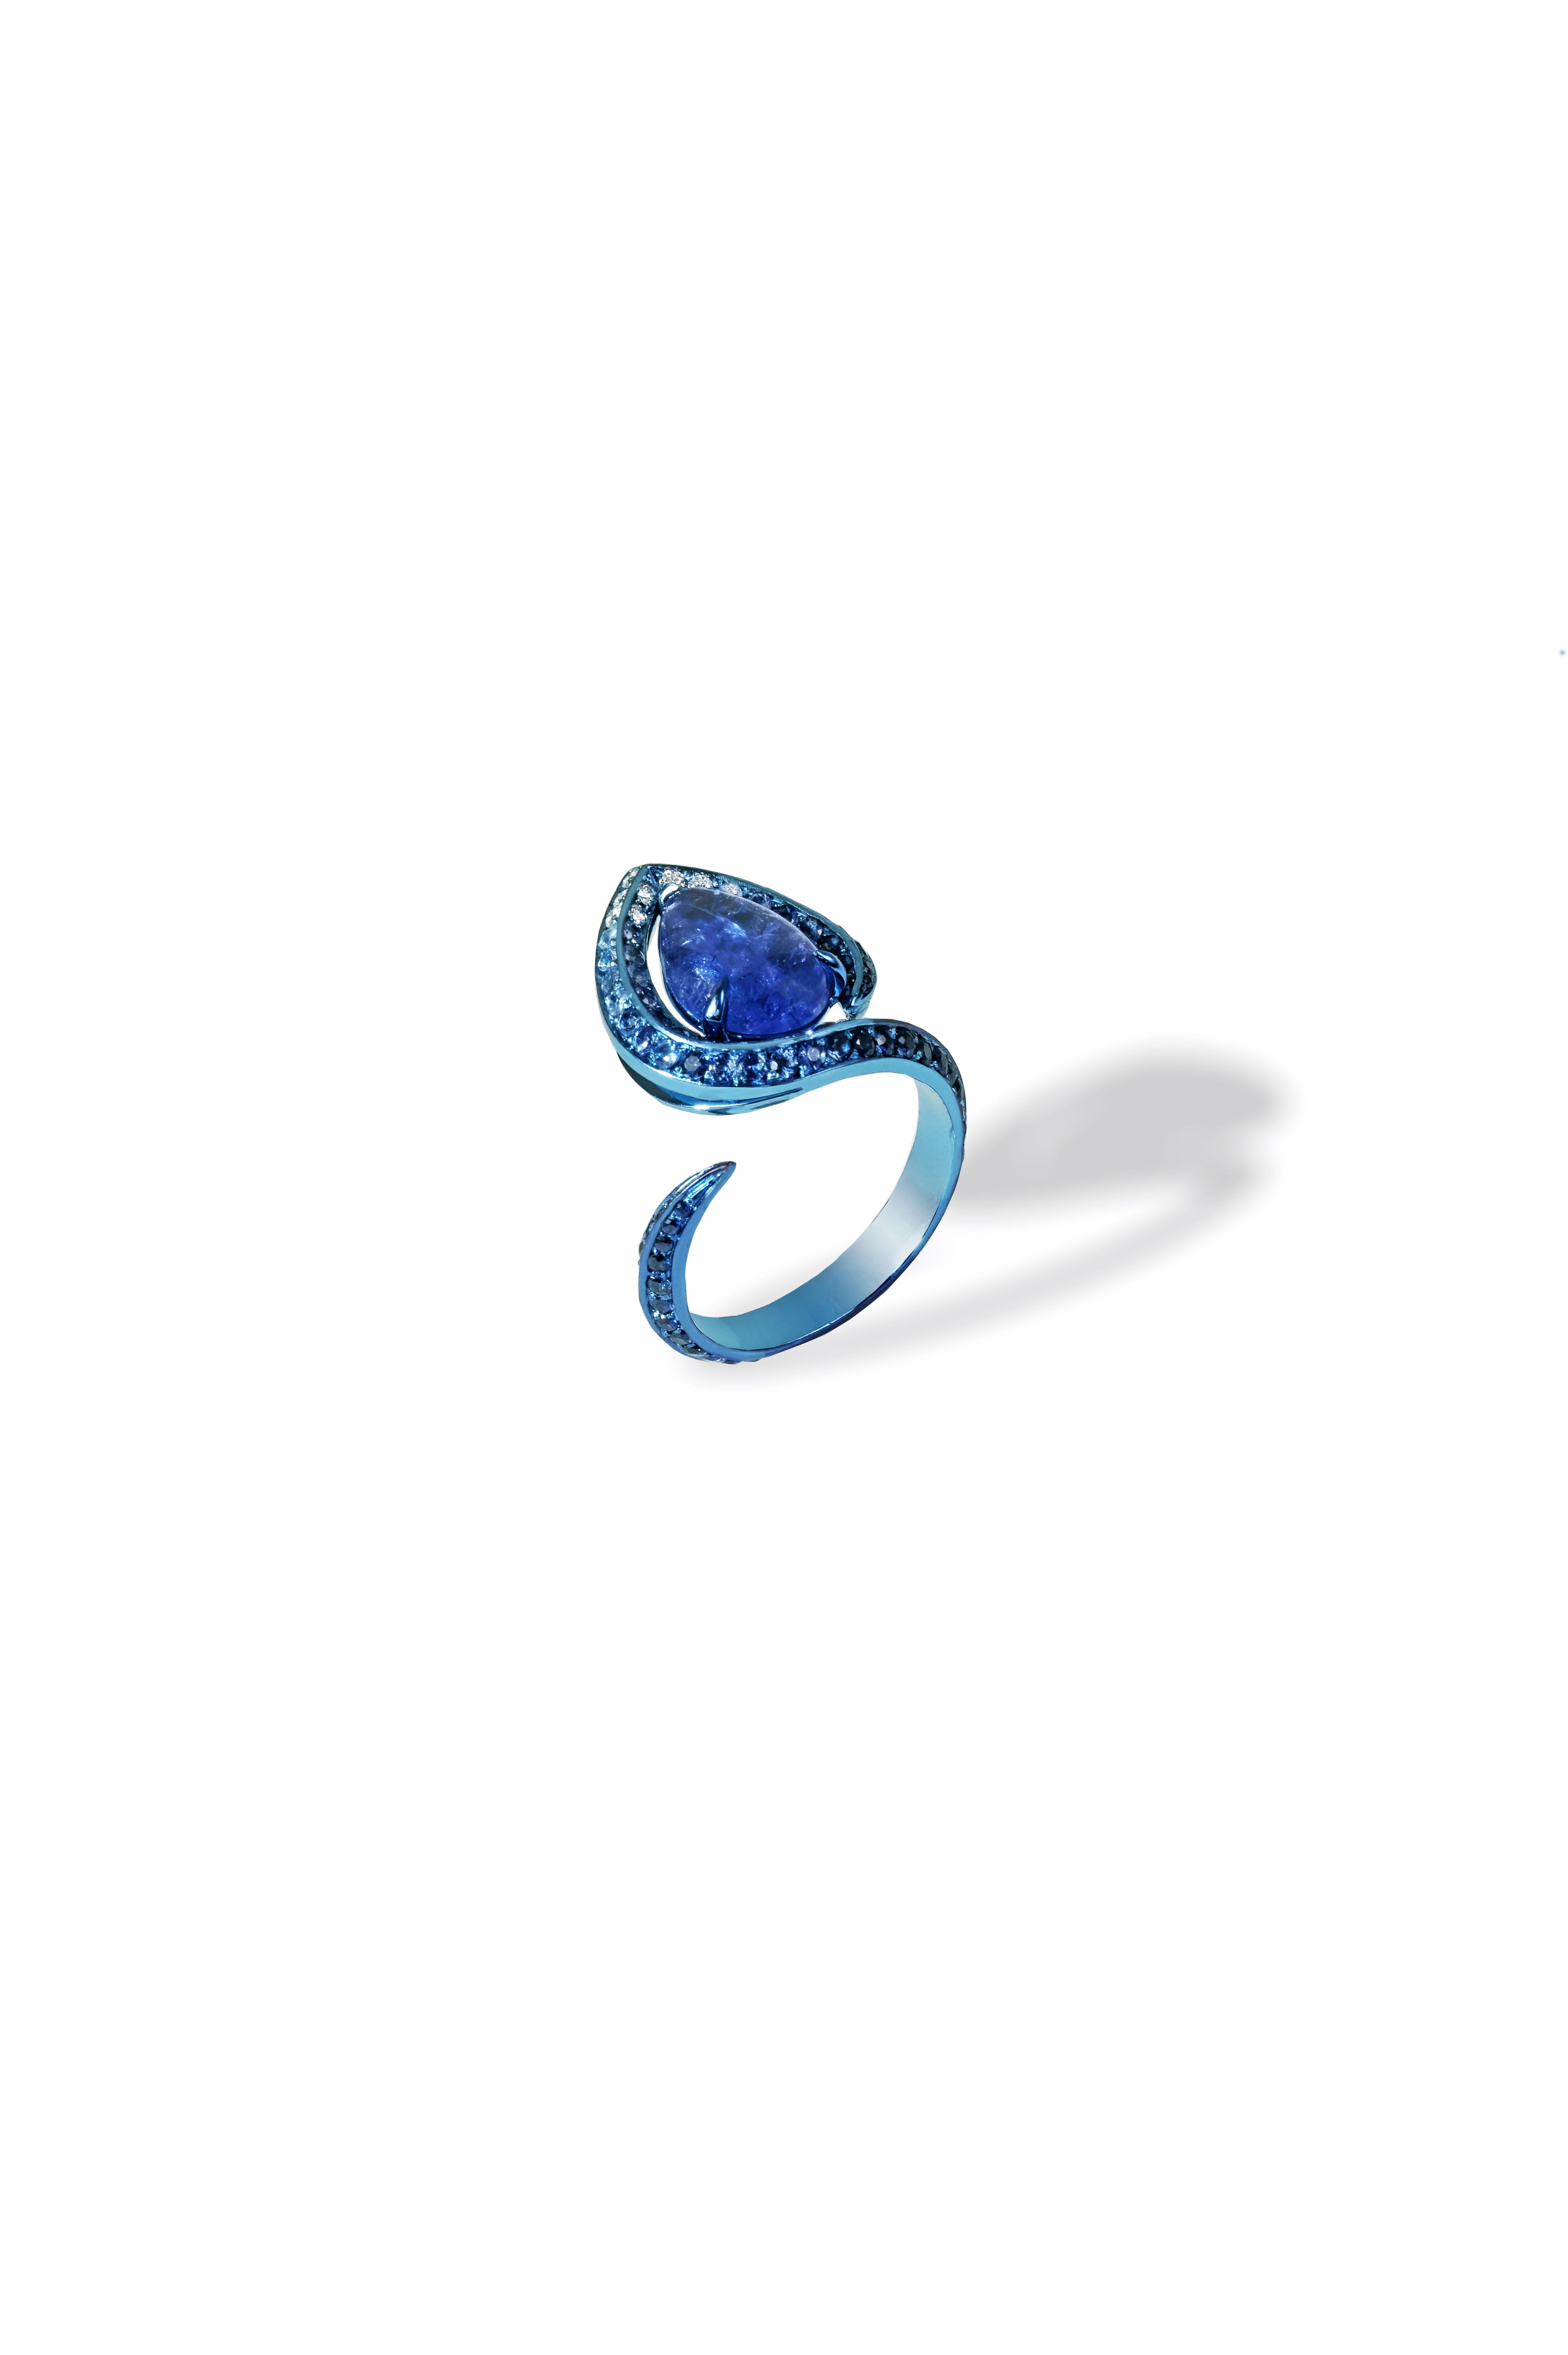 Dieser Ring wird nur auf Bestellung gefertigt. 

Handgefertigter Ring aus blauem Titan mit 119 handgefassten Steinen: Tansanit-Cabochon 2,25 kt, Saphire 1,87 kt, weiße Diamanten 0,12 kt. Die filigranen Arbeiten aus Titan werden von